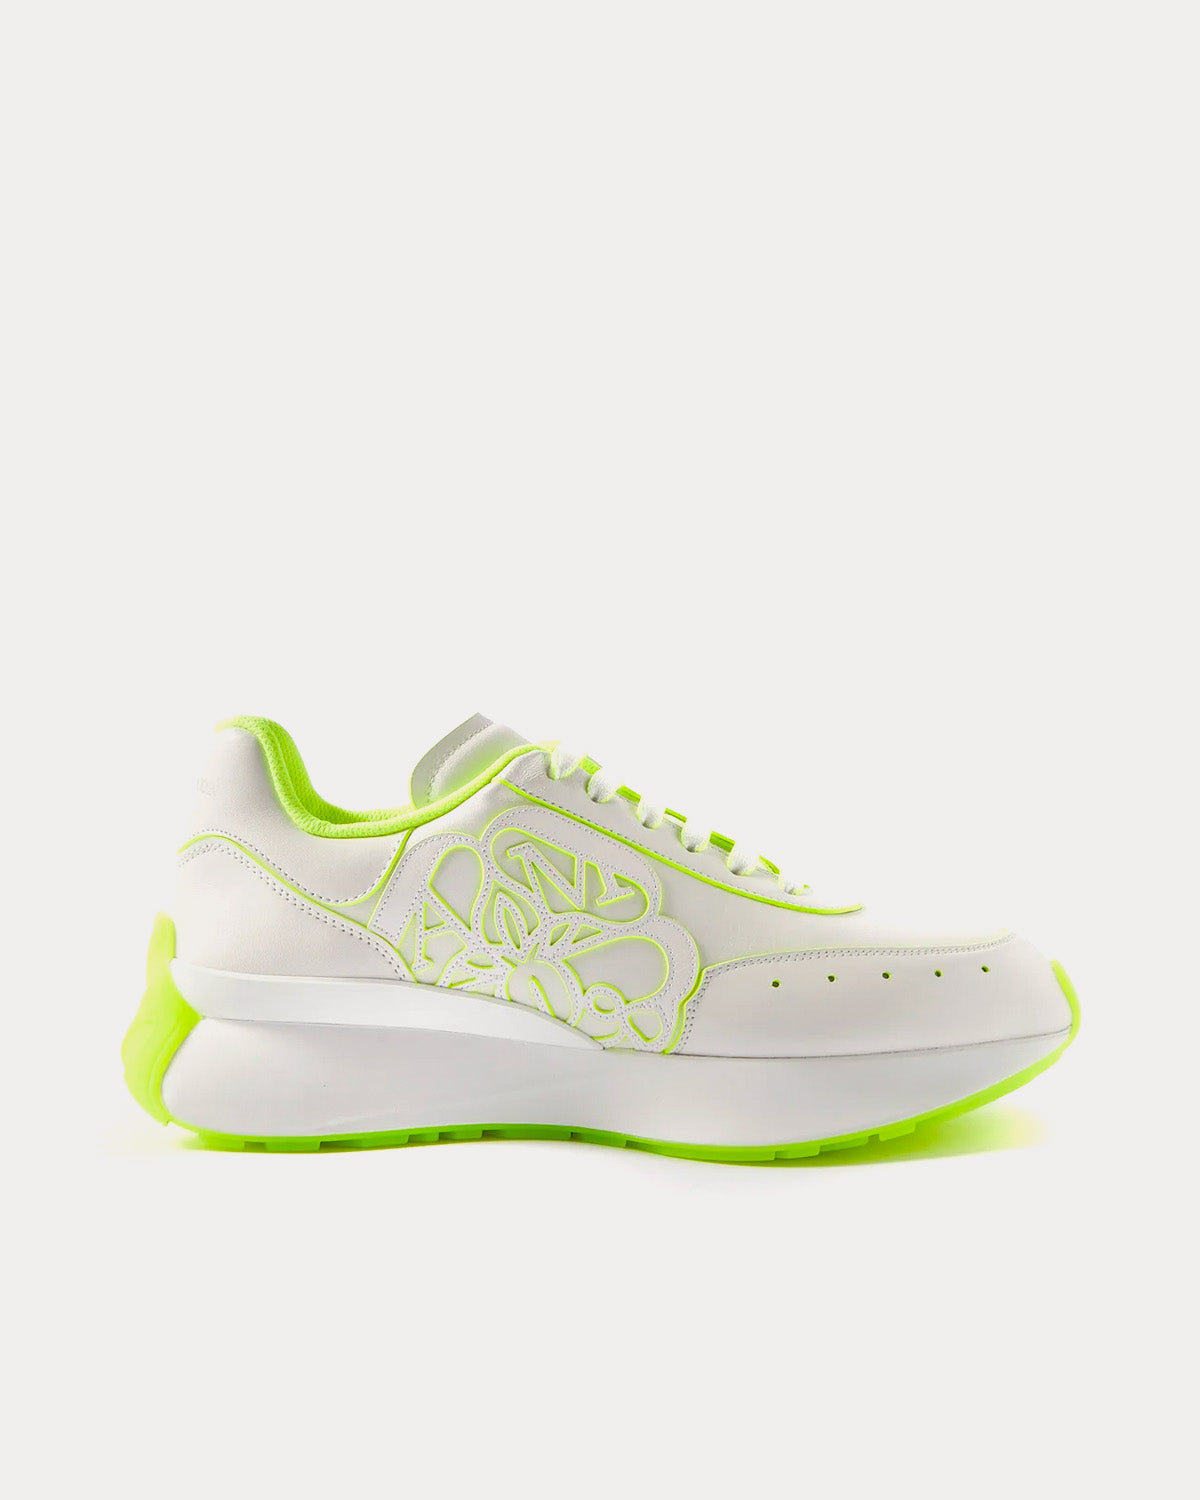 Alexander McQueen - Sprint Runner White / Acid Yellow Low Top Sneakers